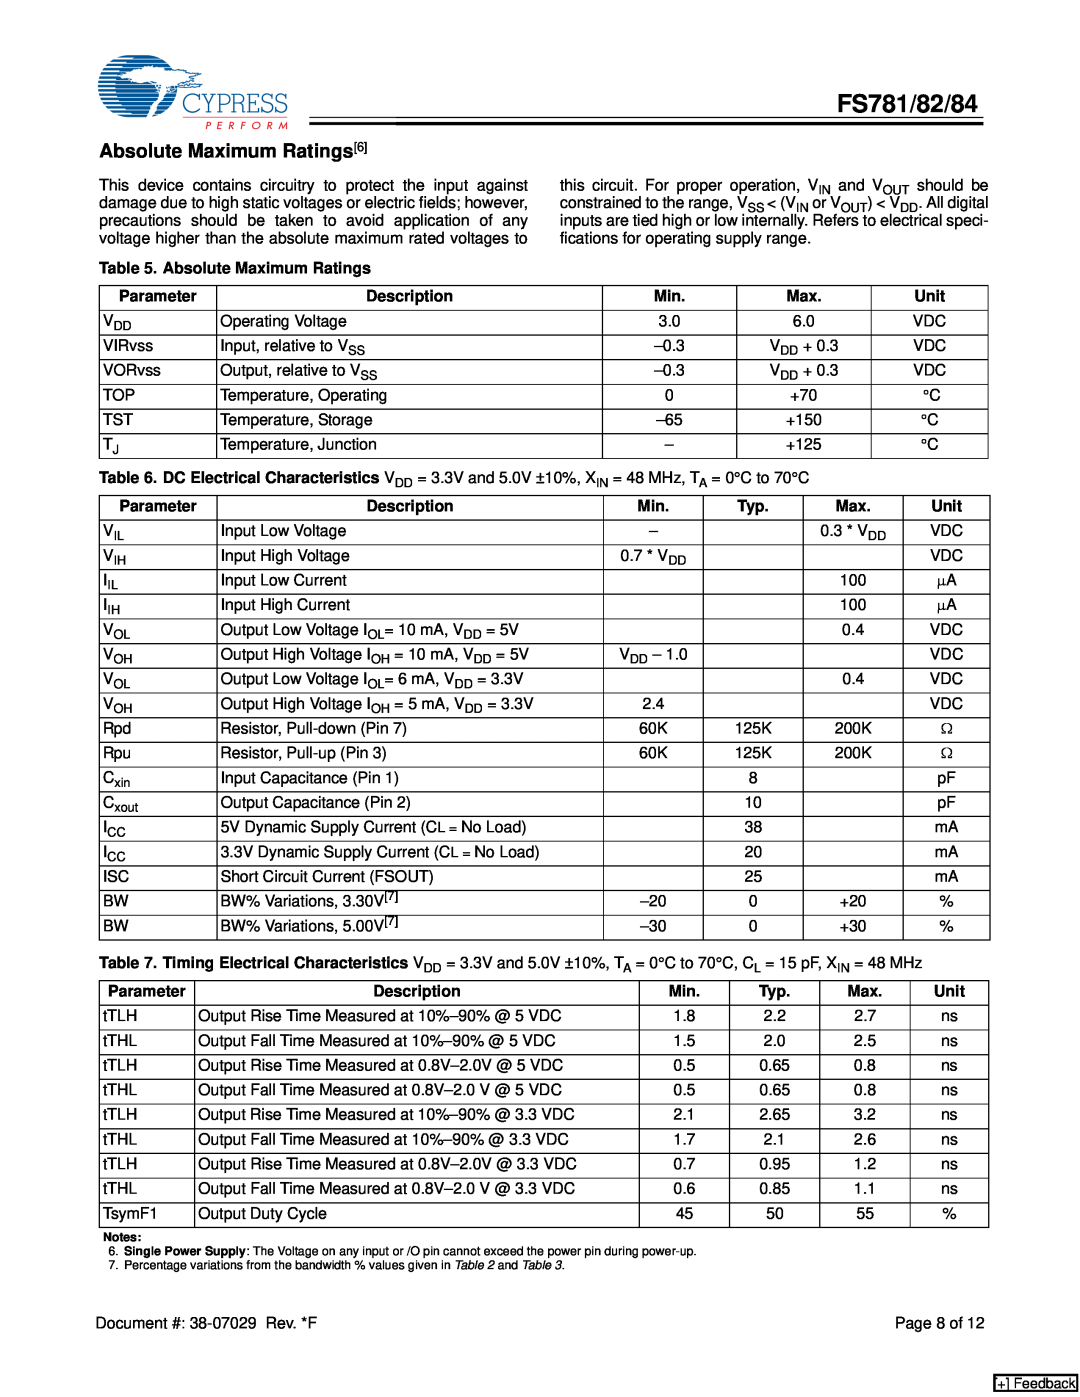 Cypress FS782, FS784 manual Absolute Maximum Ratings6, FS781/82/84 